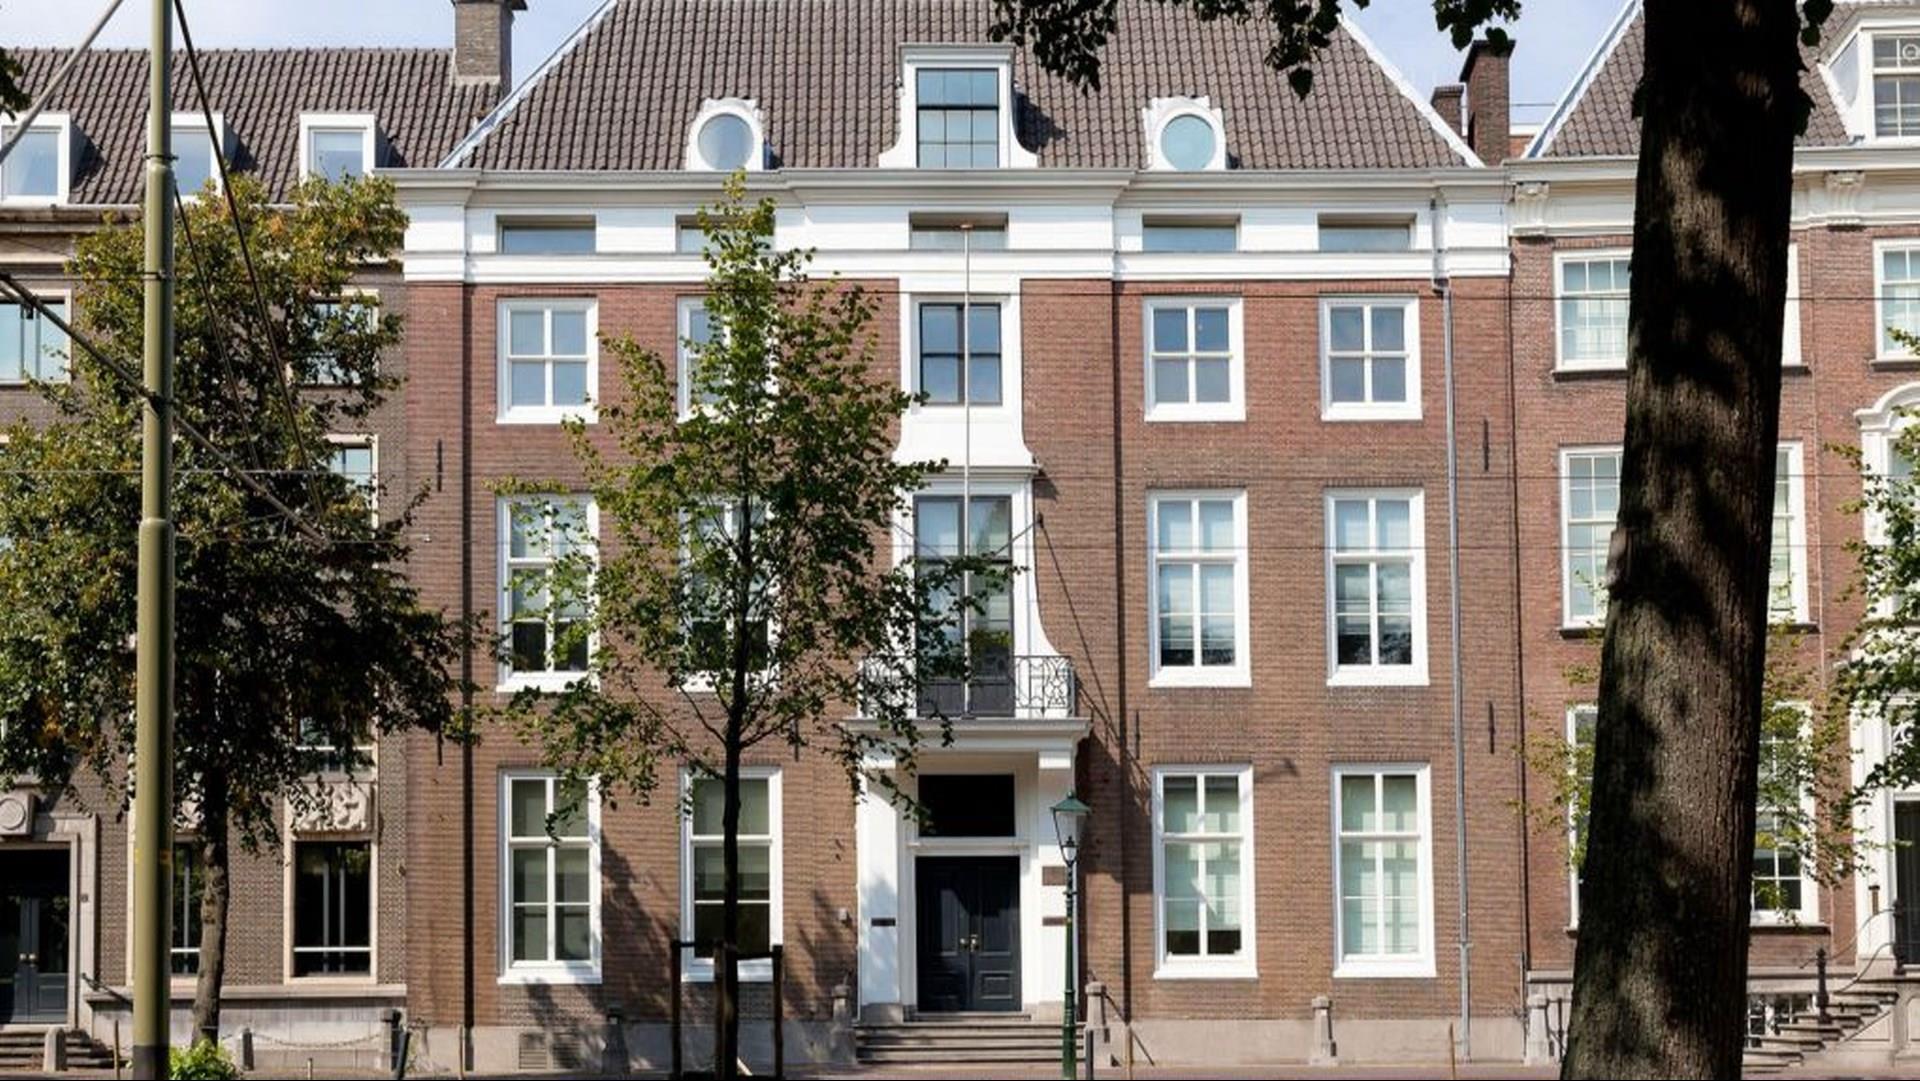 Staybridge Suites The Hague - Parliament in The Hague, NL